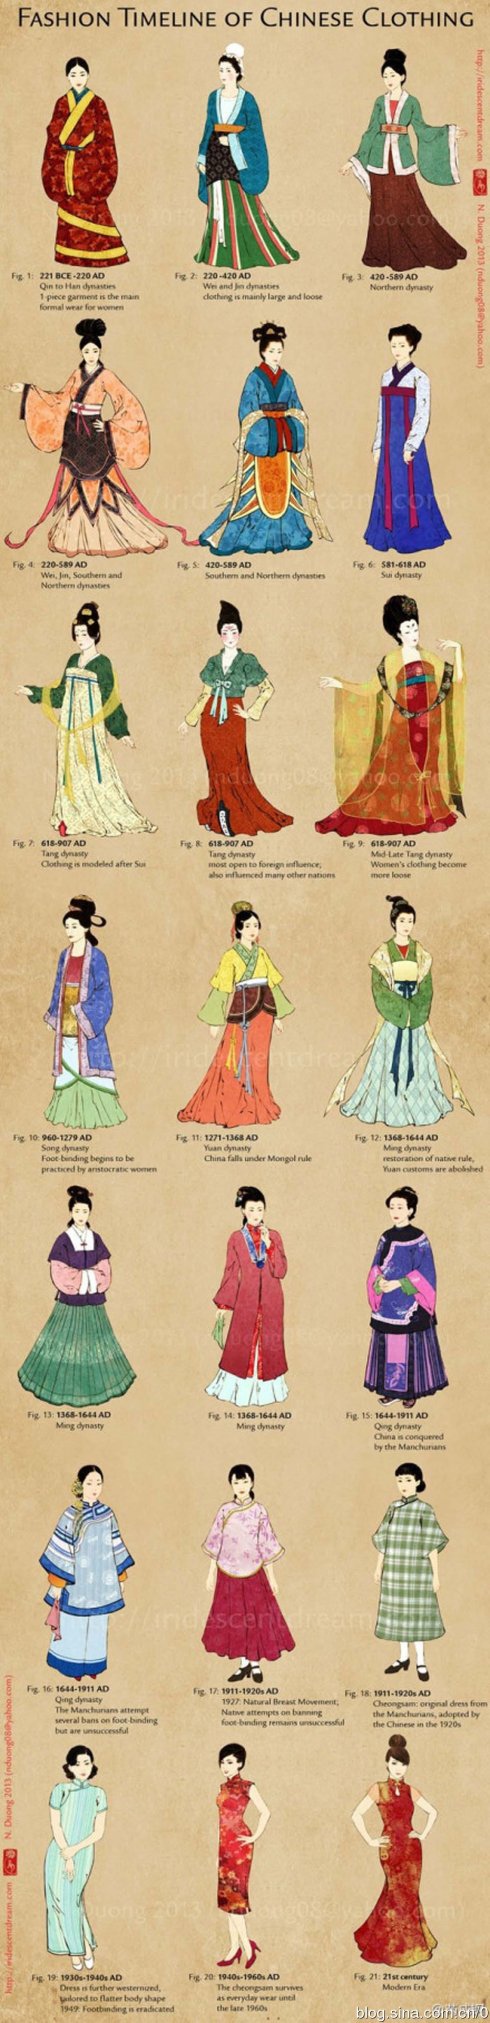 古代逢年过节 女子如何穿衣戴饰丨文史笔谈